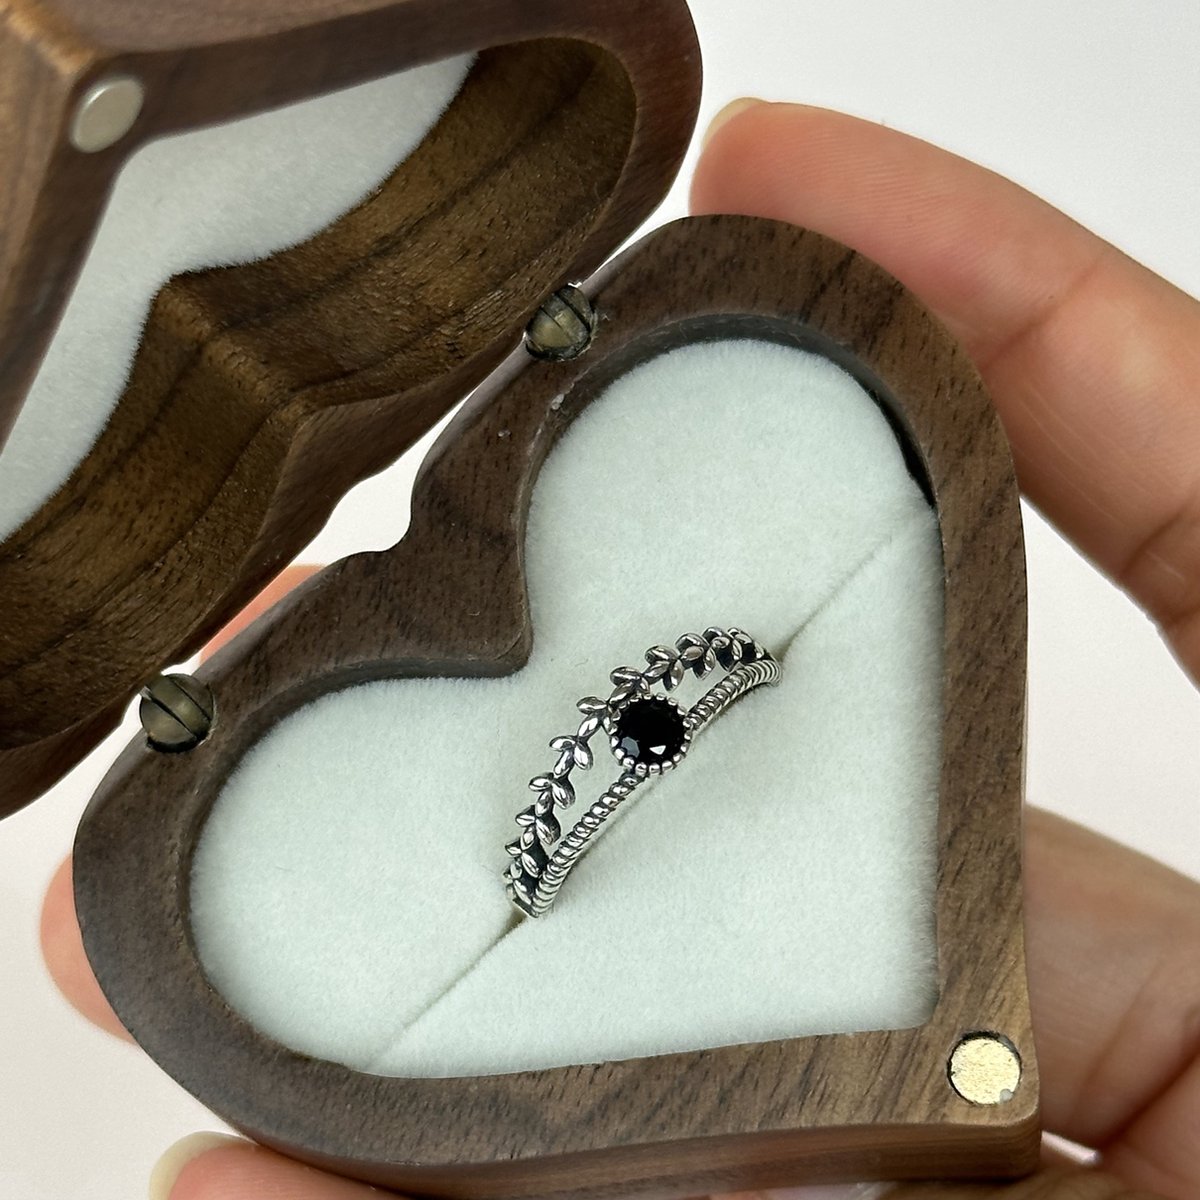 CouplesPicks Romeinse Krans Ring Voor Haar - Verstelbaar in Maat & Stijlvol Design - Gemaakt van 925 Zilver - Zirkonia Steen - Ring speciaal voor haar - Belofte Ring - Vriendschap Ring